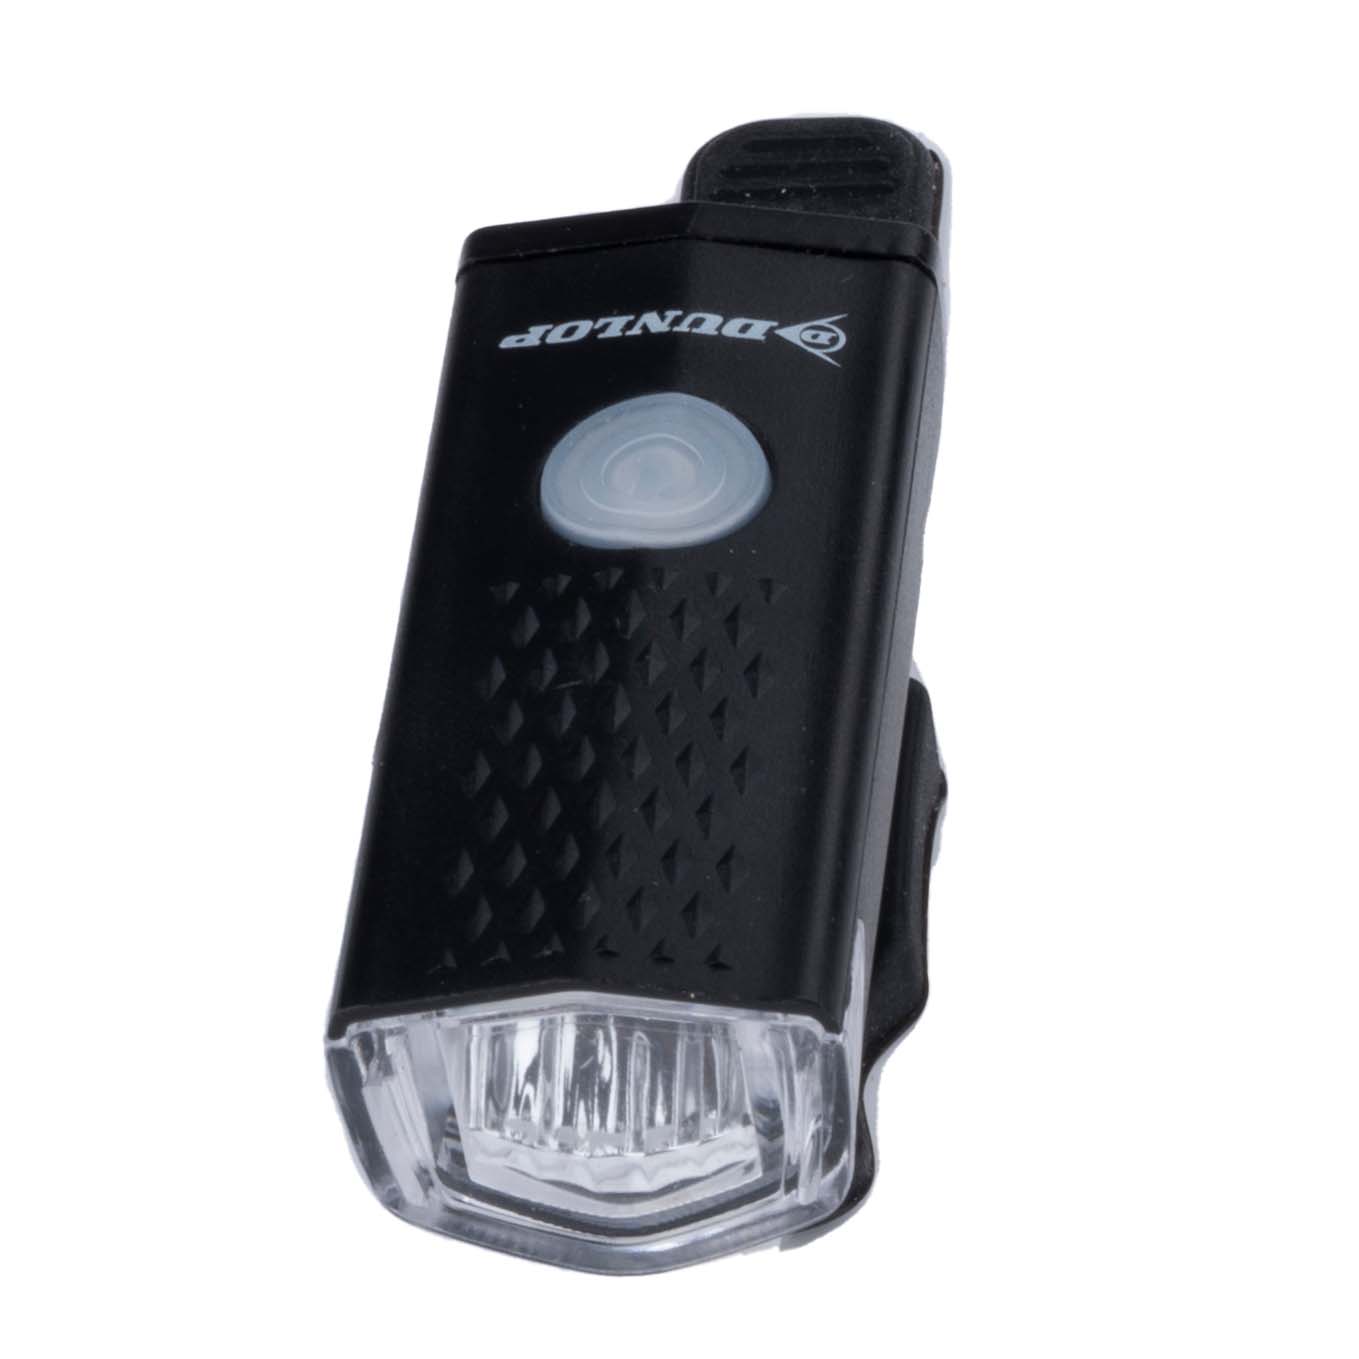 Dunlop fietsverlichting set - Veiligheid en gemak voor je fietsritten - USB oplaadbaar - Bivakshop